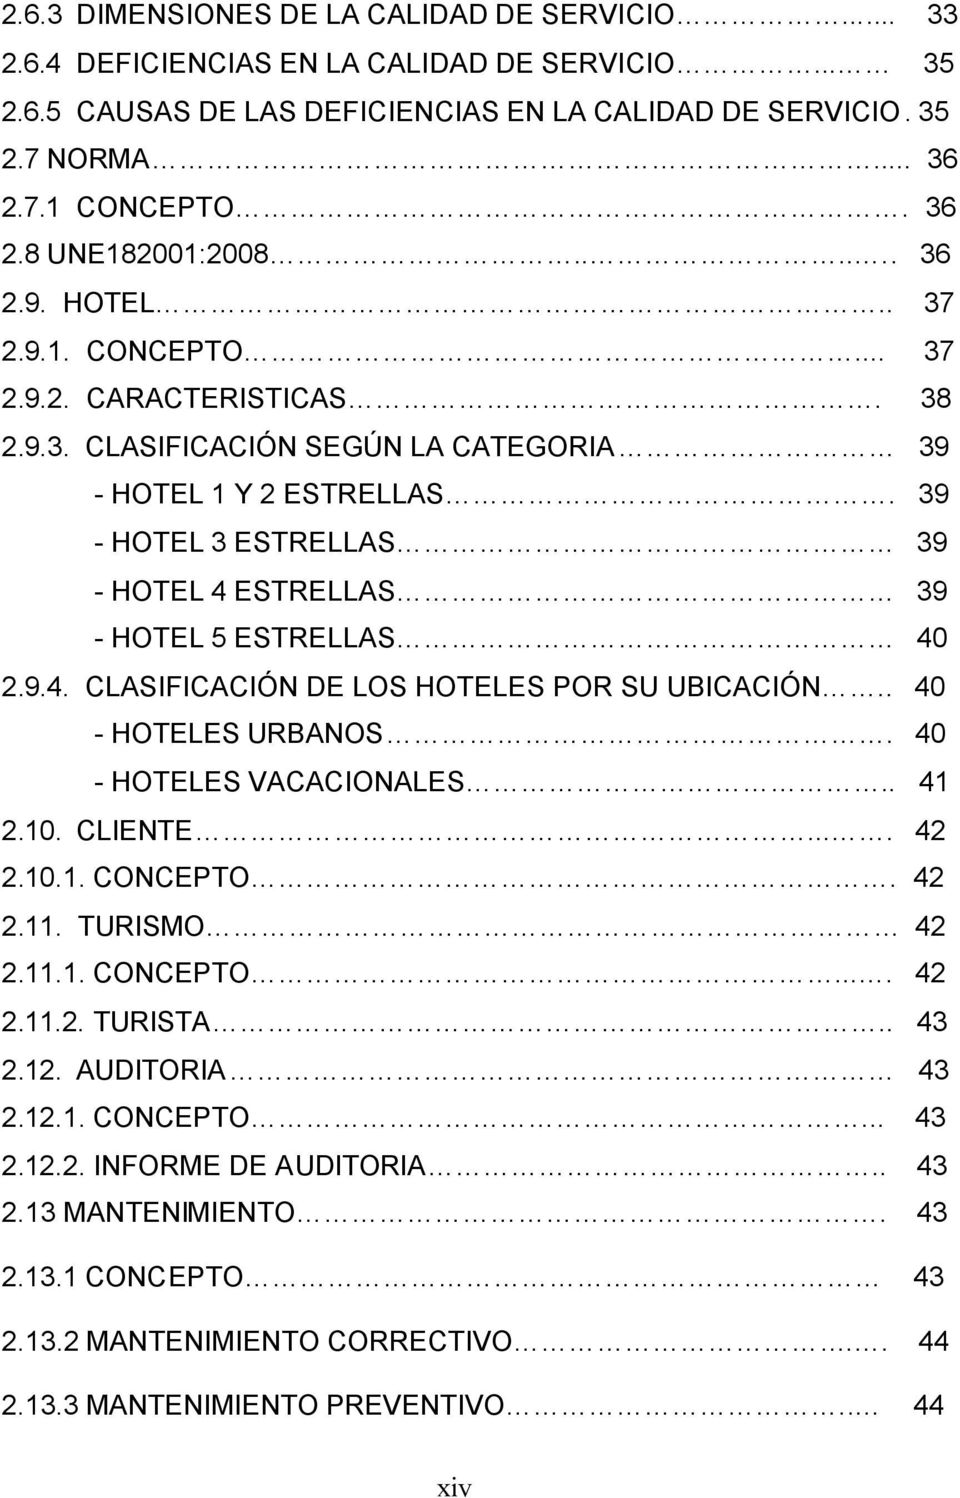 39 - HOTEL 3 ESTRELLAS 39 - HOTEL 4 ESTRELLAS 39 - HOTEL 5 ESTRELLAS 40 2.9.4. CLASIFICACIÓN DE LOS HOTELES POR SU UBICACIÓN.. 40 - HOTELES URBANOS. 40 - HOTELES VACACIONALES.. 41 2.10. CLIENTE.... 42 2.